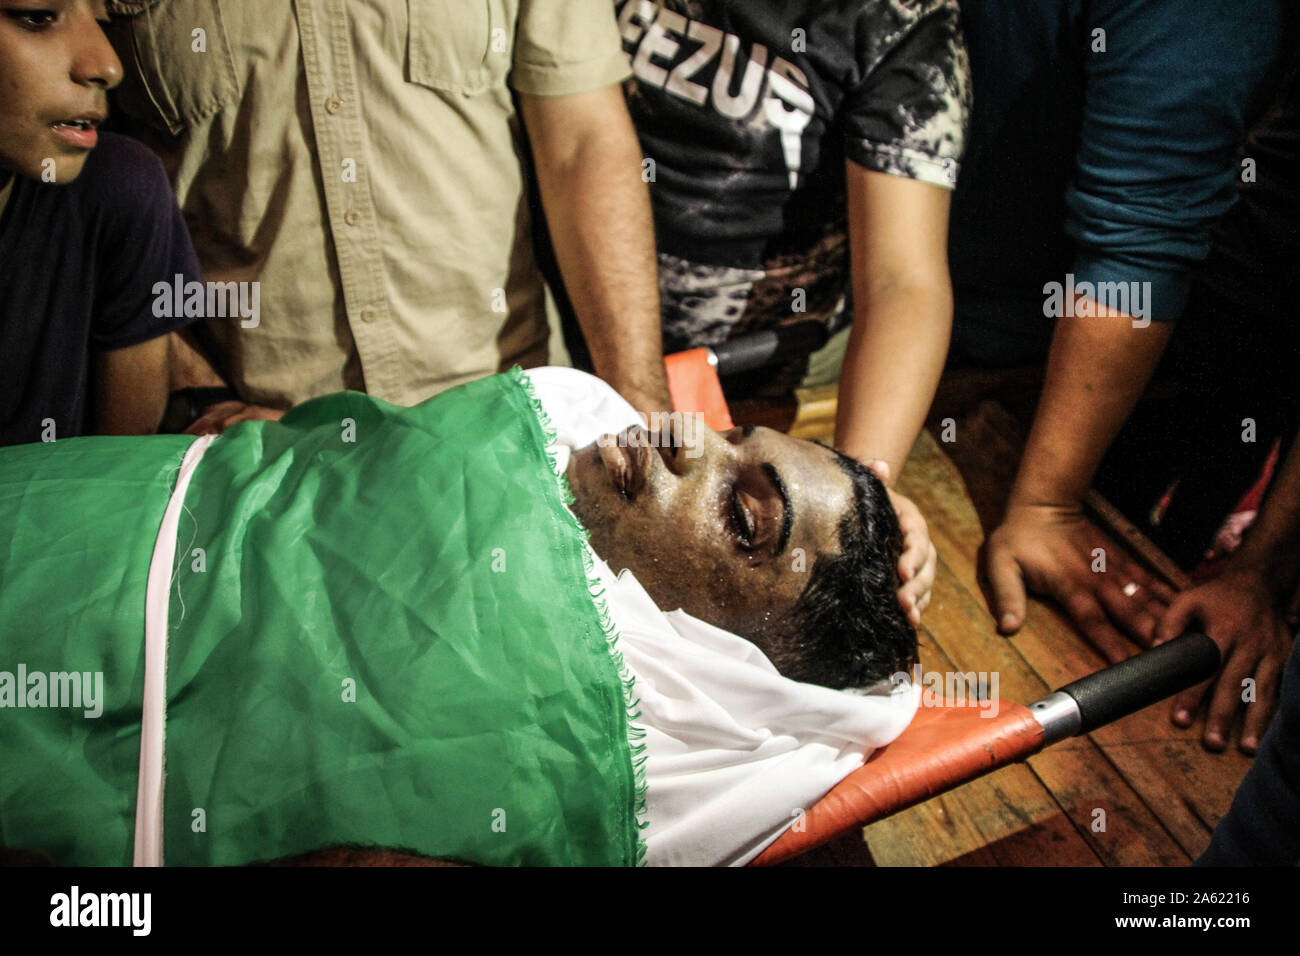 Oktober 23, 2019: Gaza, Palästina. 23. Oktober 2019. Palästinensischen Emad Shahin Khalil ist seinen endgültigen Abschied während seiner Beerdigung in der Al-Nuseirat Flüchtlingslager im Gazastreifen gegeben. Emad Khalil Shahin, 17, hatte, starb Stunden nach israelischen Soldaten erschossen und verletzten ihn am 3. November 2018, während der Proteste in Gaza. Emad Begräbnis und Beerdigung stattgefunden haben fast ein Jahr nach seinem Tod, als sein Körper hatte durch die israelische Armee für mehrere Monate gehalten worden und wurde erst vor kurzem zu seiner Familie zurückgekehrt. Al Mezan Zentrum für Menschenrechte verurteilte Israels Politik der Beibehaltung der Dea Stockfoto